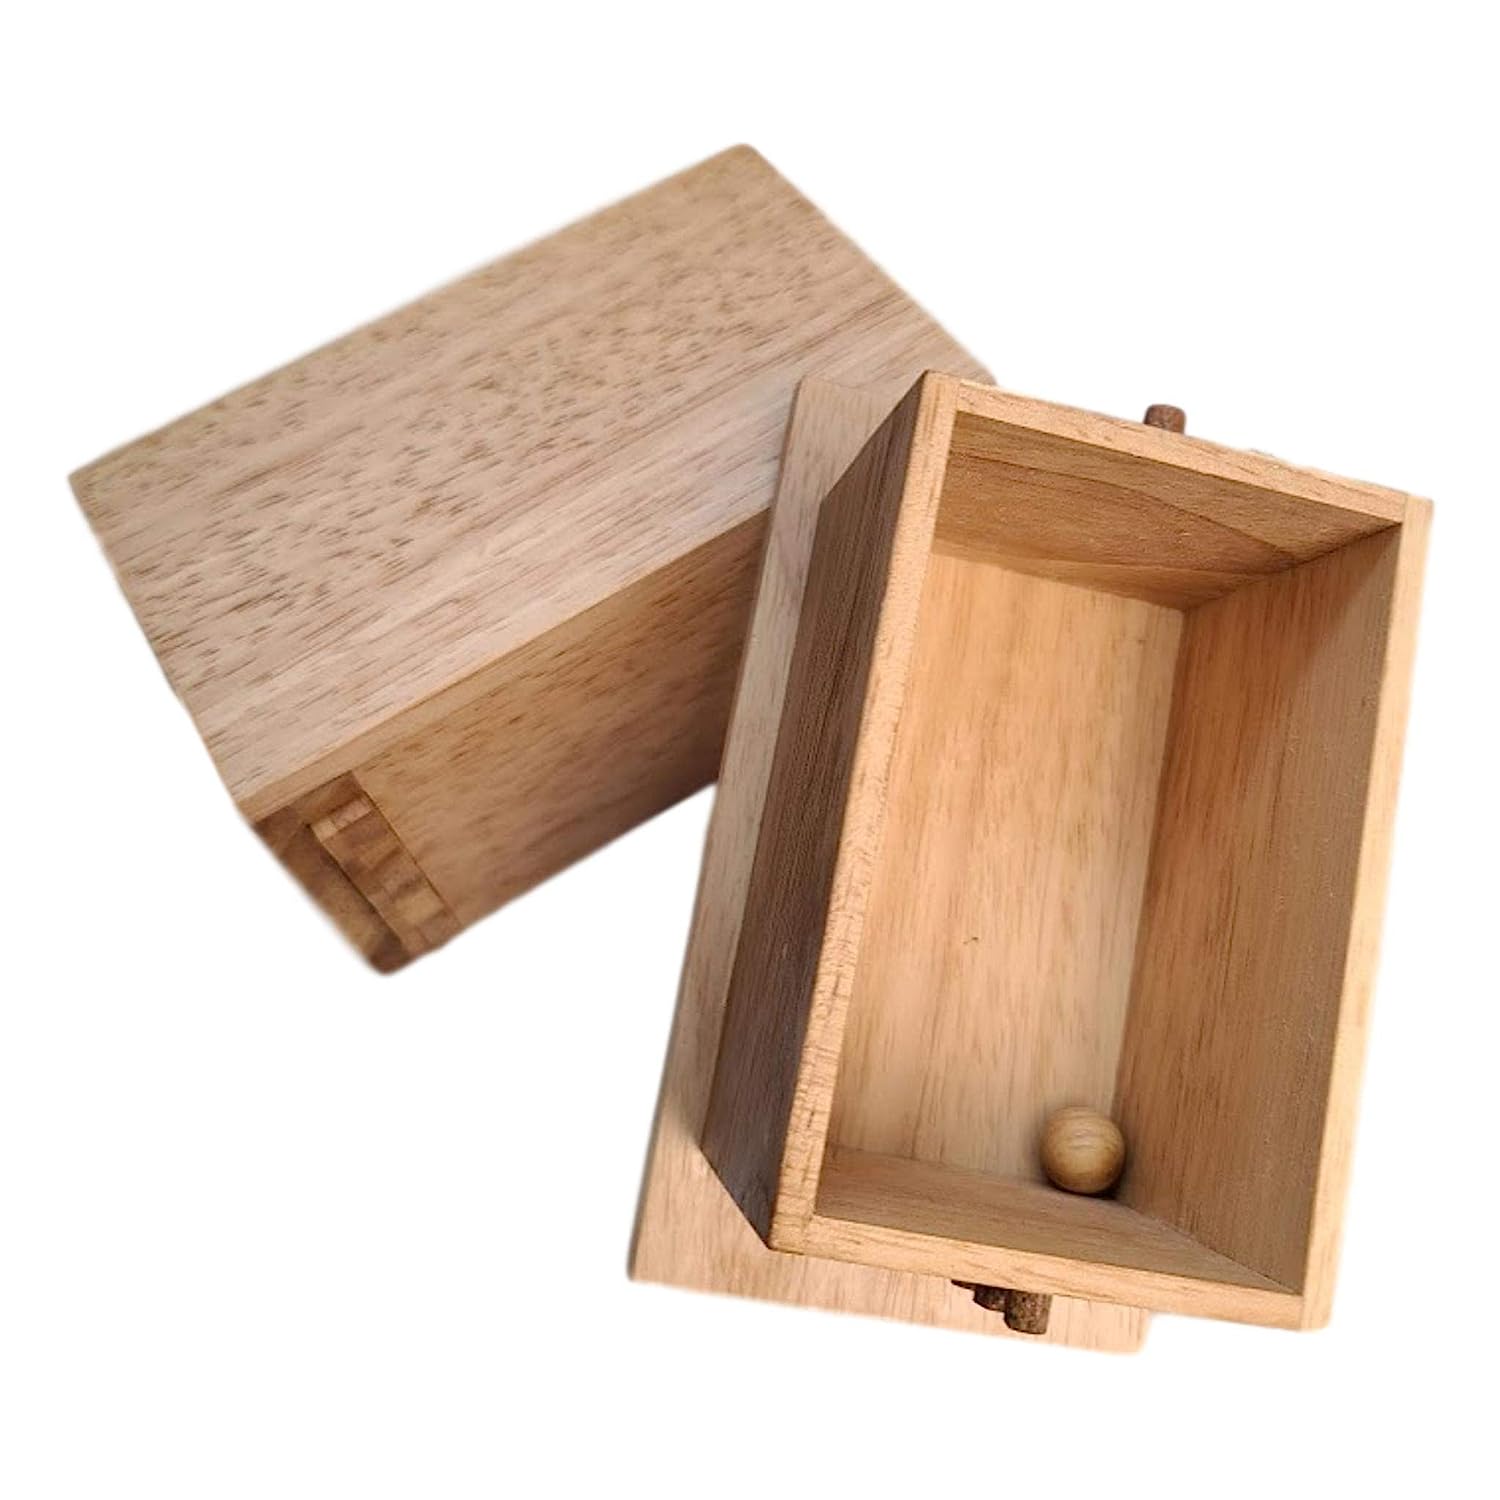 Secret Lock Box - Premium Model - Wooden Puzzle Boxes for Adults